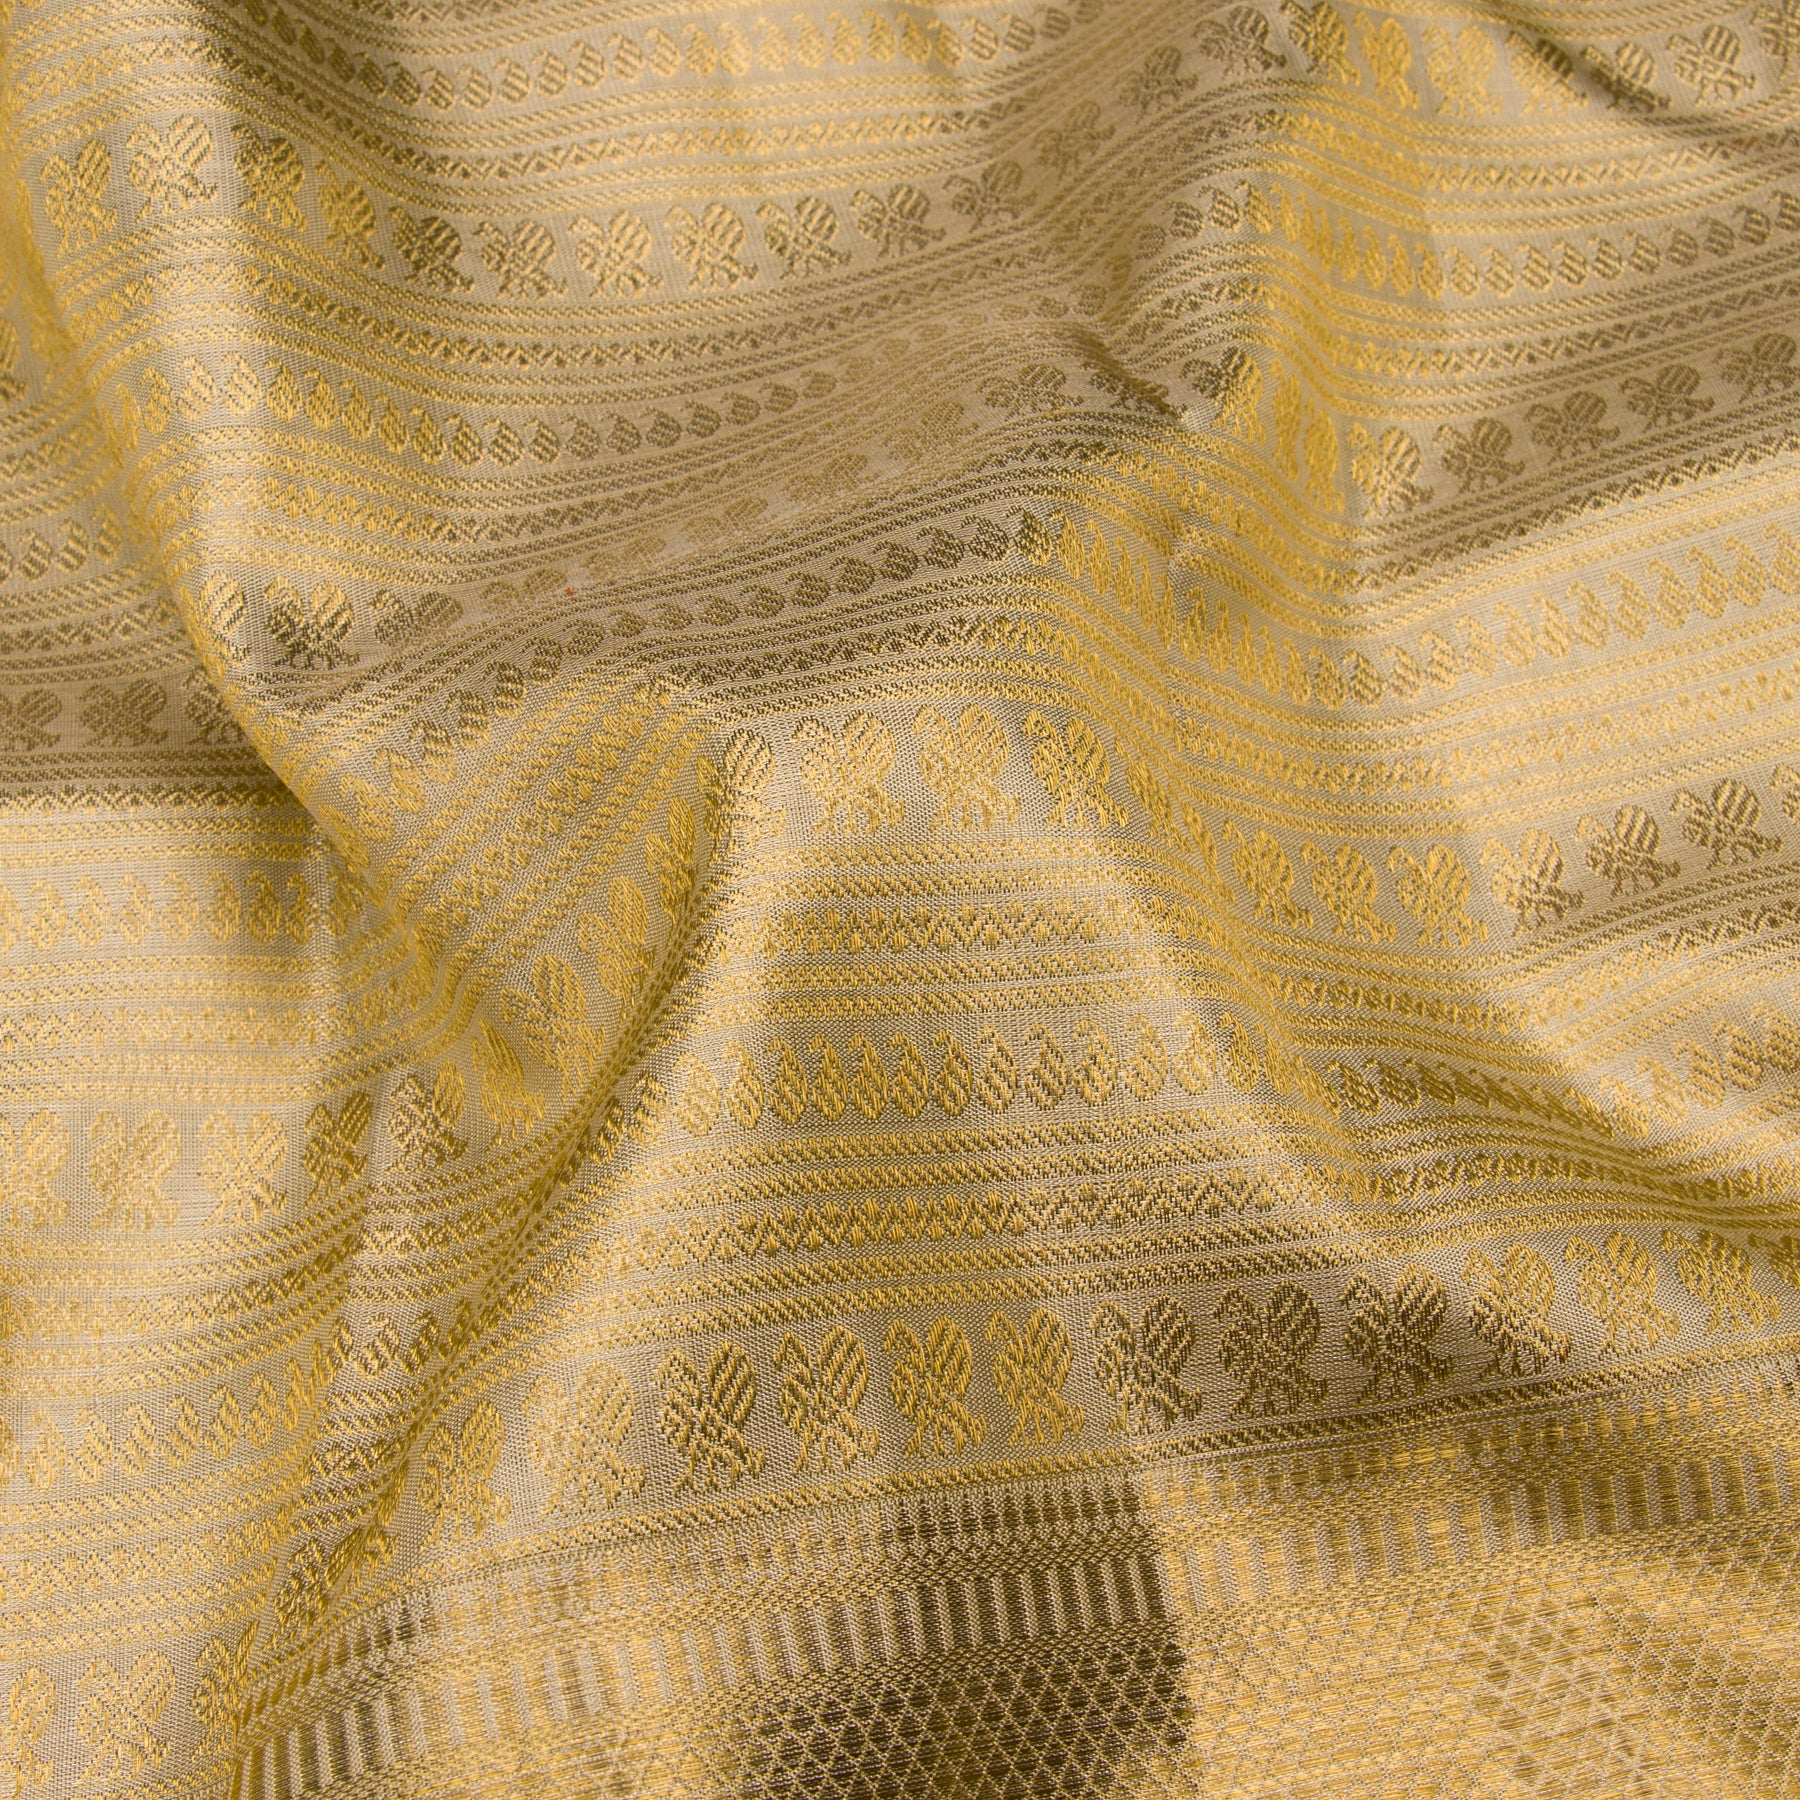 Kanakavalli Kanjivaram Silk Sari 23-110-HS001-10427 - Fabric View